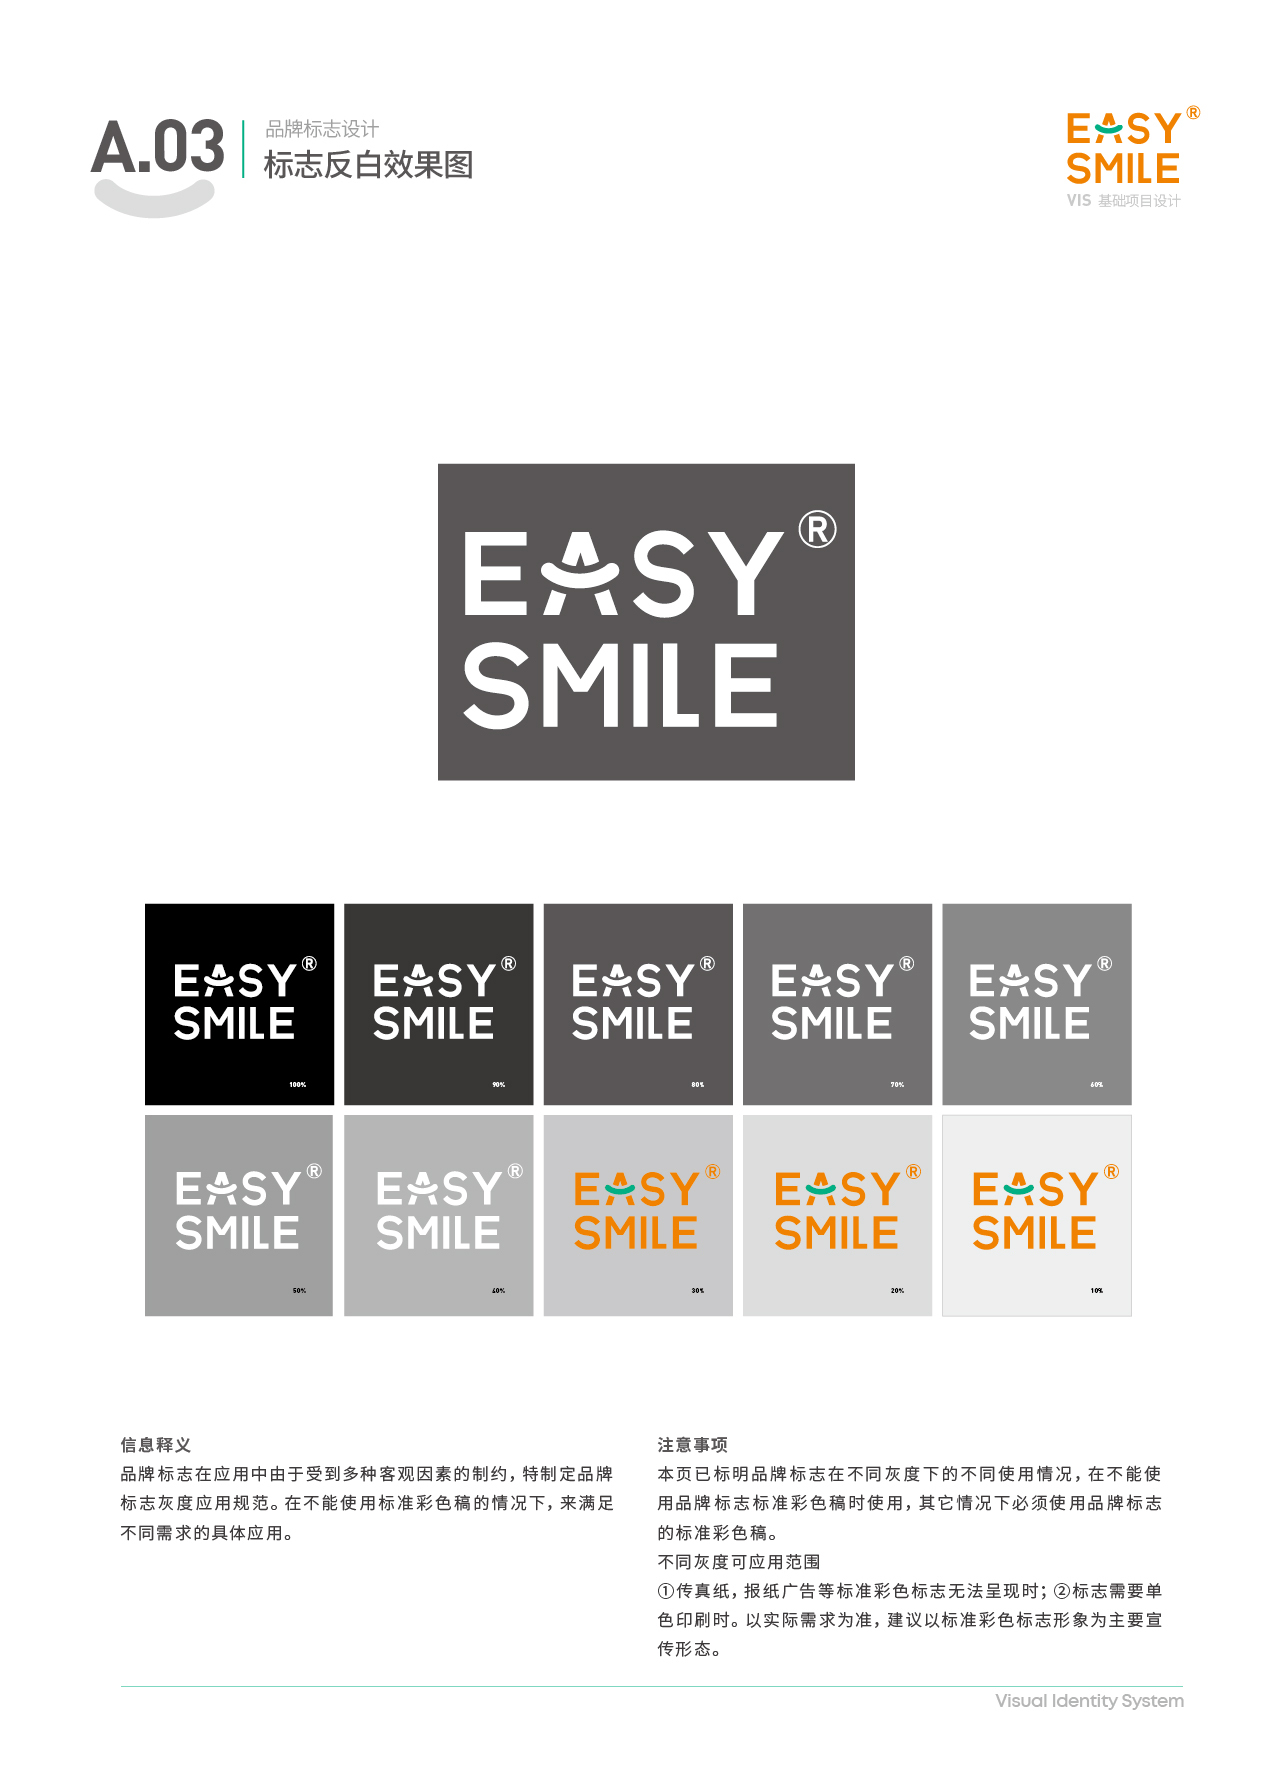 Easysmile 轻松笑品牌VIS图6